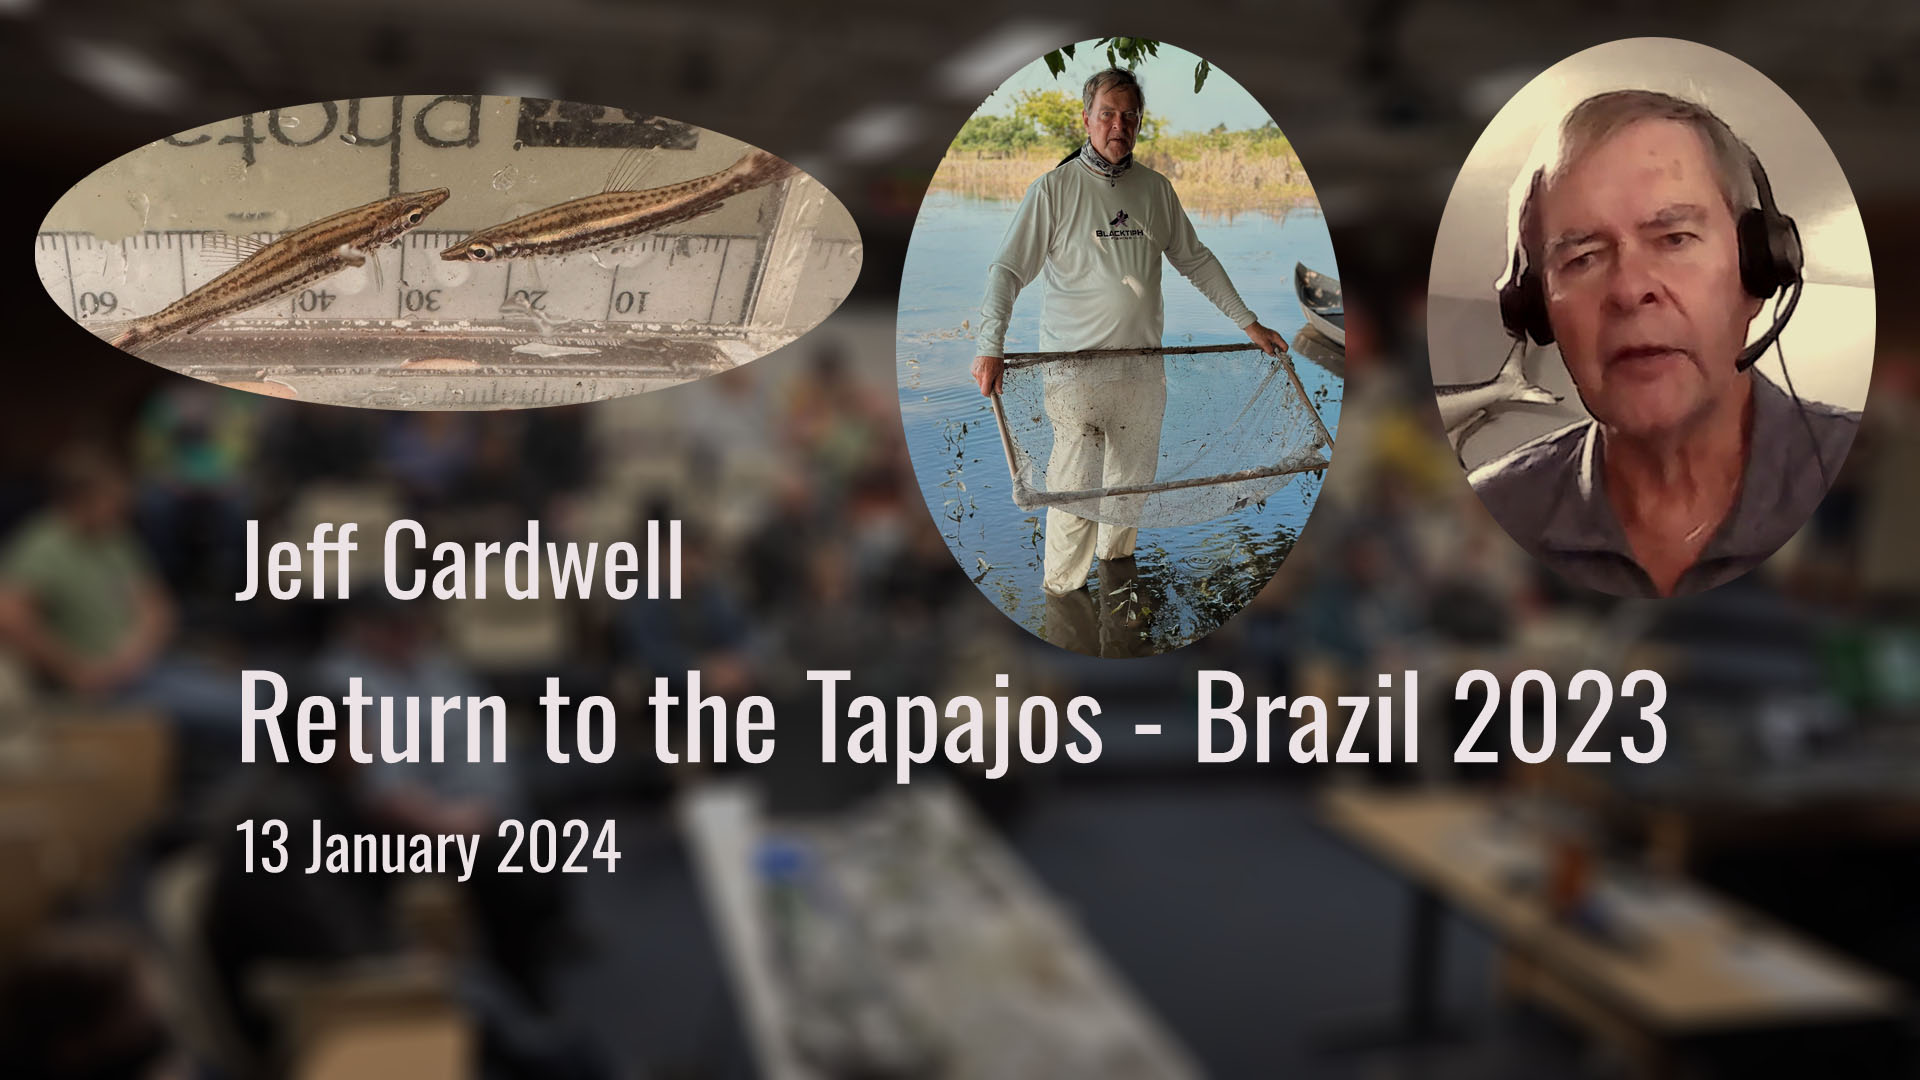 Return to the Tapajos - Jeff Cardwell - Saturday, January 13, 2024